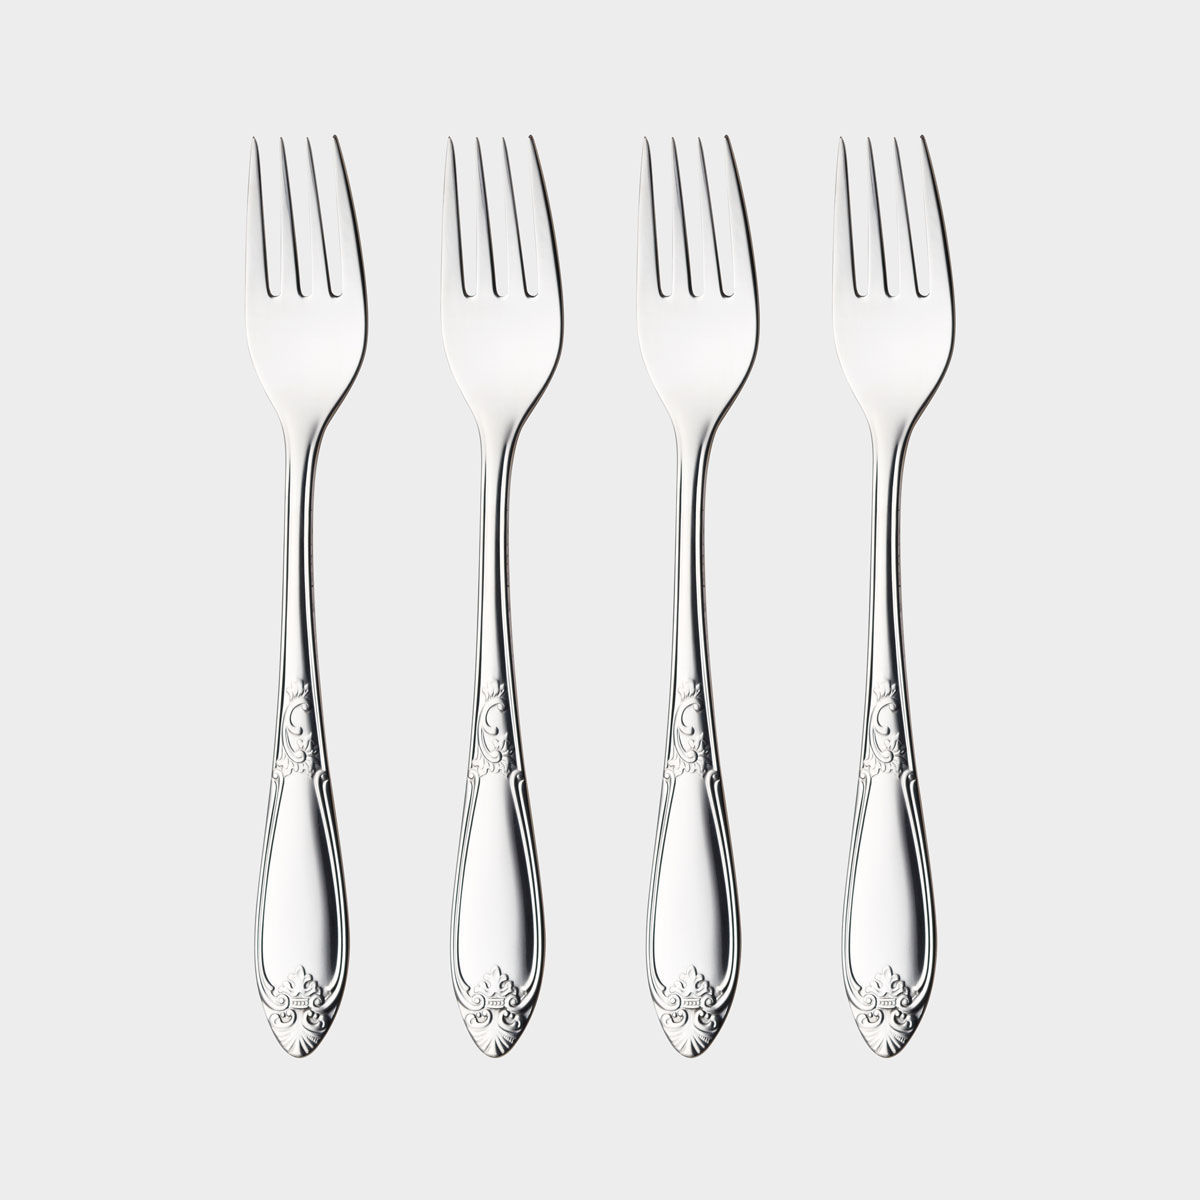 Nina dinner forks product image